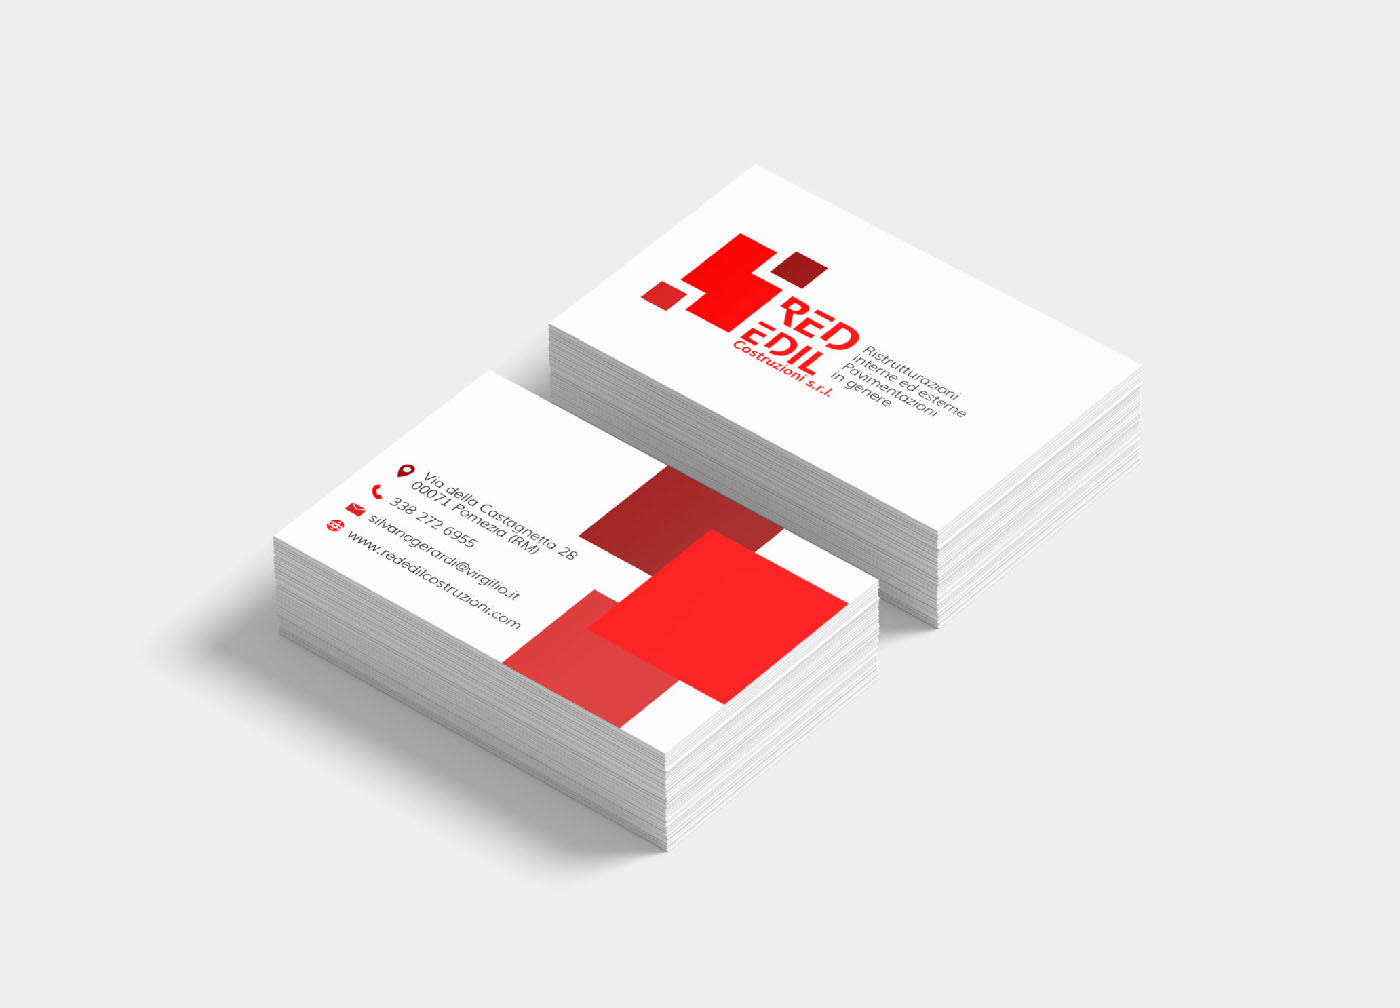 Red Edil Costruzioni - Business Card